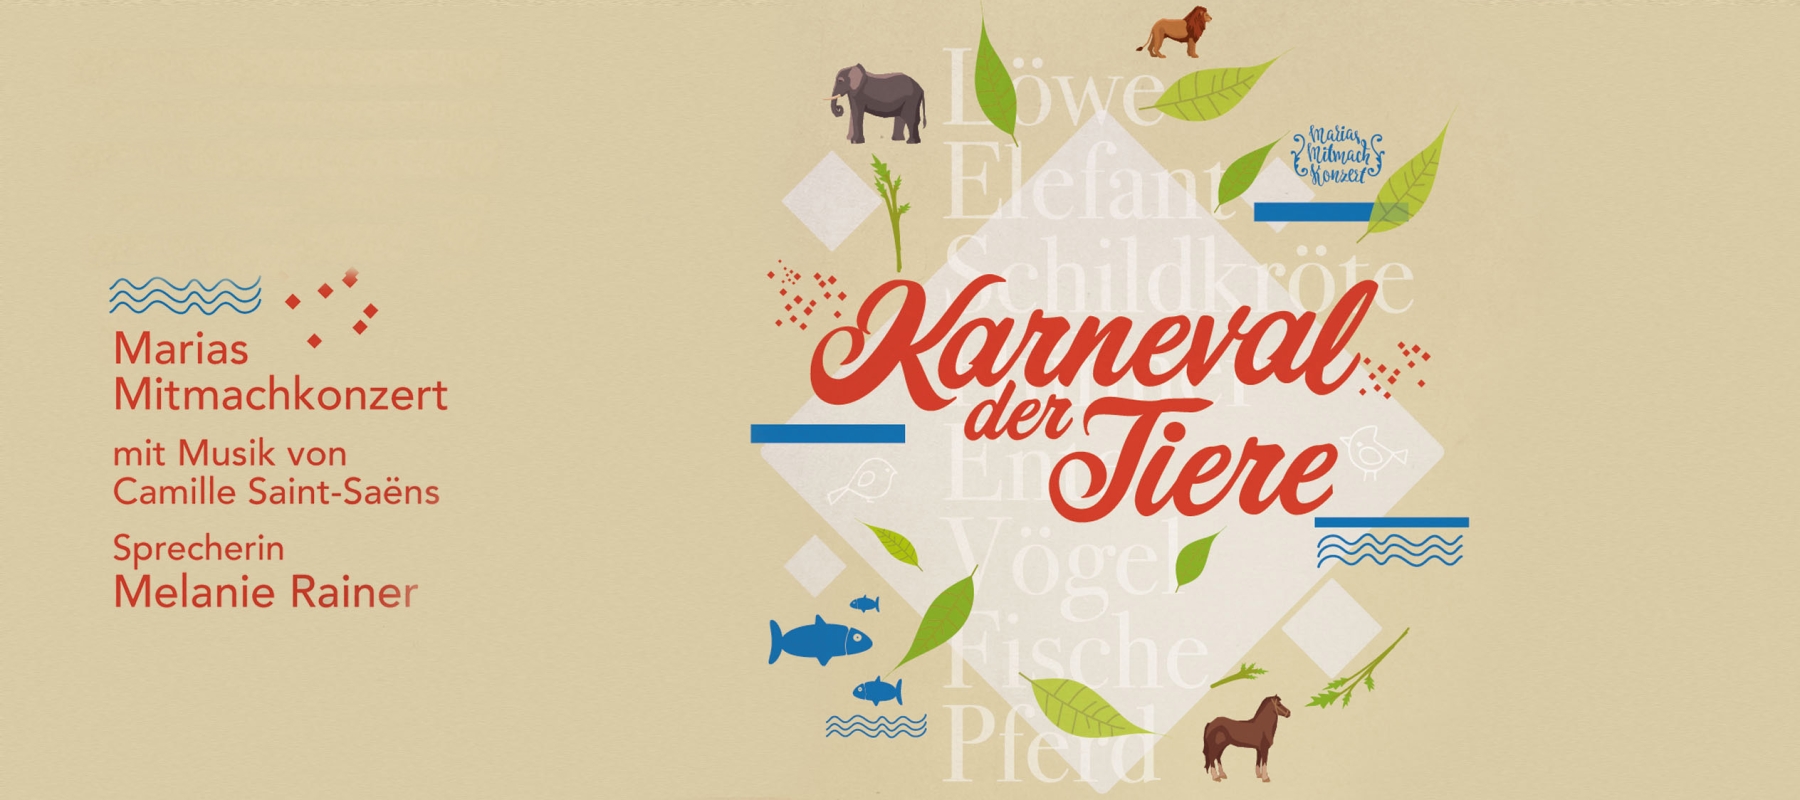 Turmtheater Regensburg zeigt »Der Karneval der Tiere« mit Maria Gruber (Geige), Christiane Schulte (Geige), Waltraud Gruber (Bratsche), Tina Molle (Cello), Eva Rosenhammer (Querflöte), Melanie Rainer (Sprecherin)